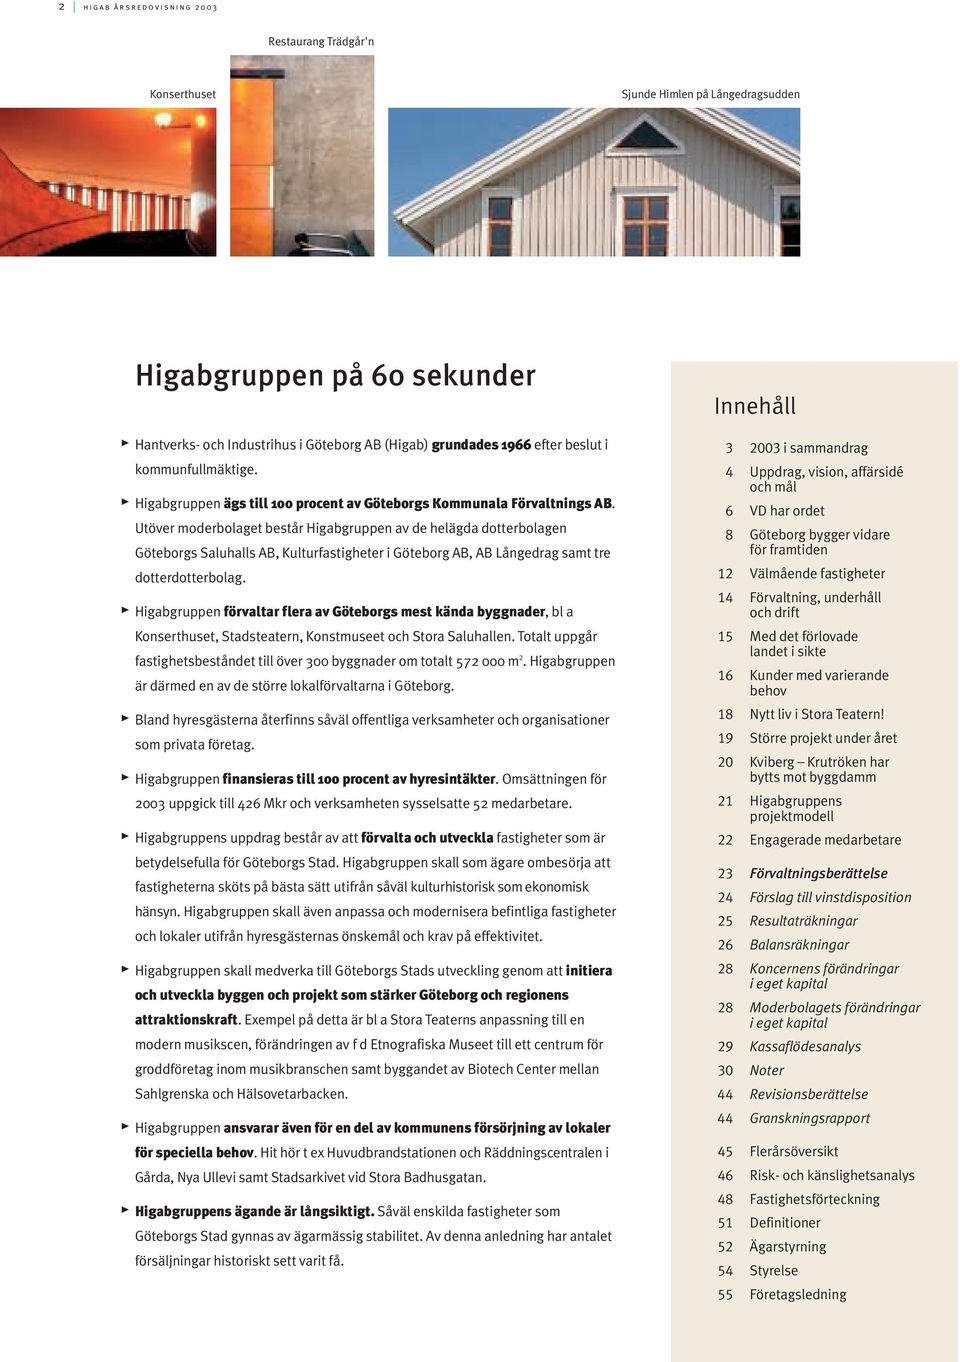 Utöver moderbolaget består Higabgruppen av de helägda dotterbolagen Göteborgs Saluhalls AB, Kulturfastigheter i Göteborg AB, AB Långedrag samt tre dotterdotterbolag.